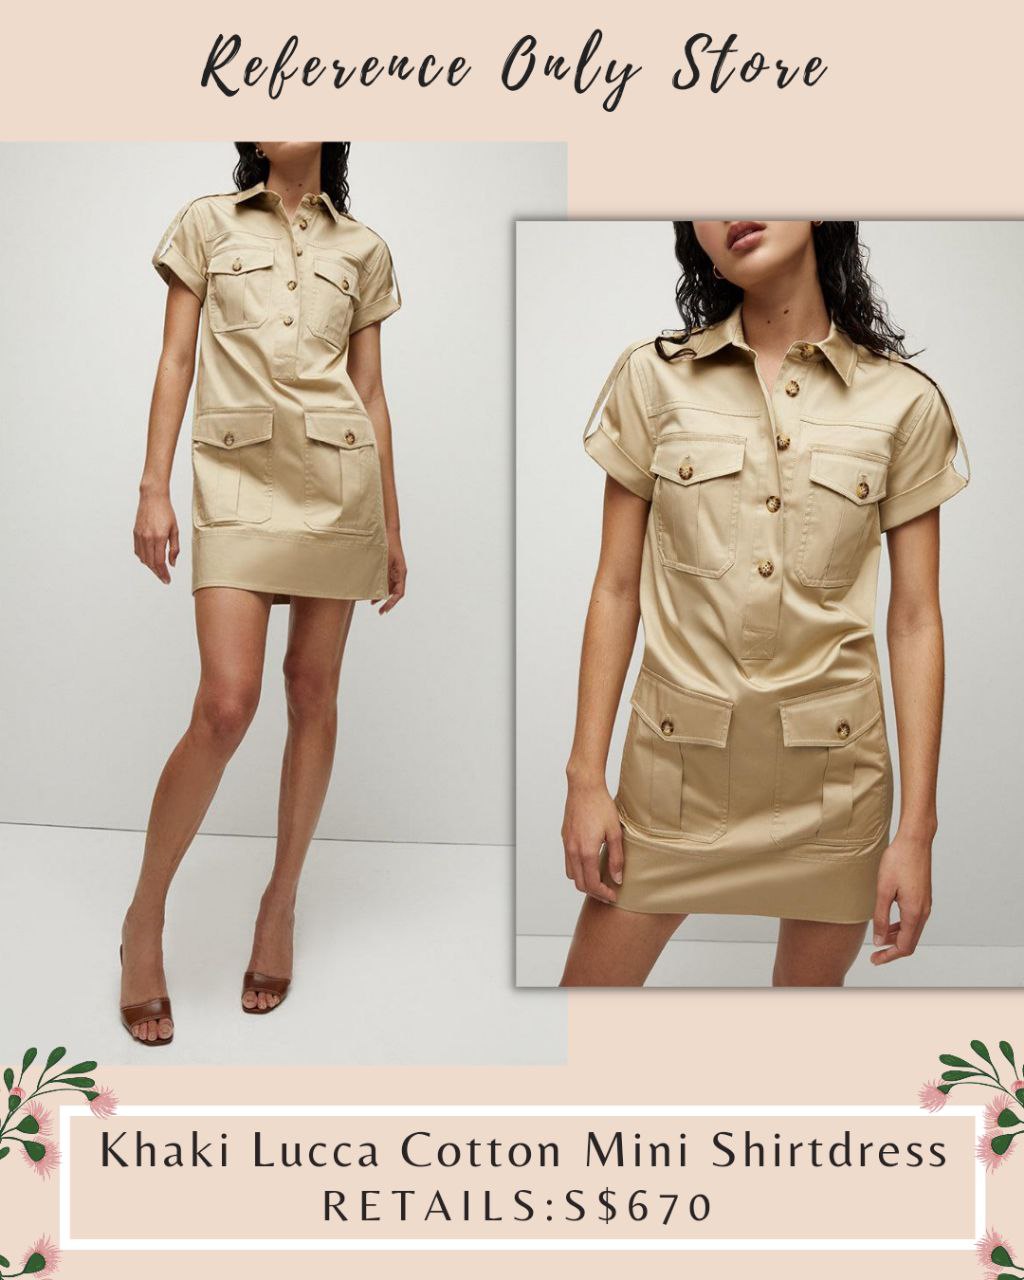 VB Khaki Lucca Cotton Mini Shirt dress